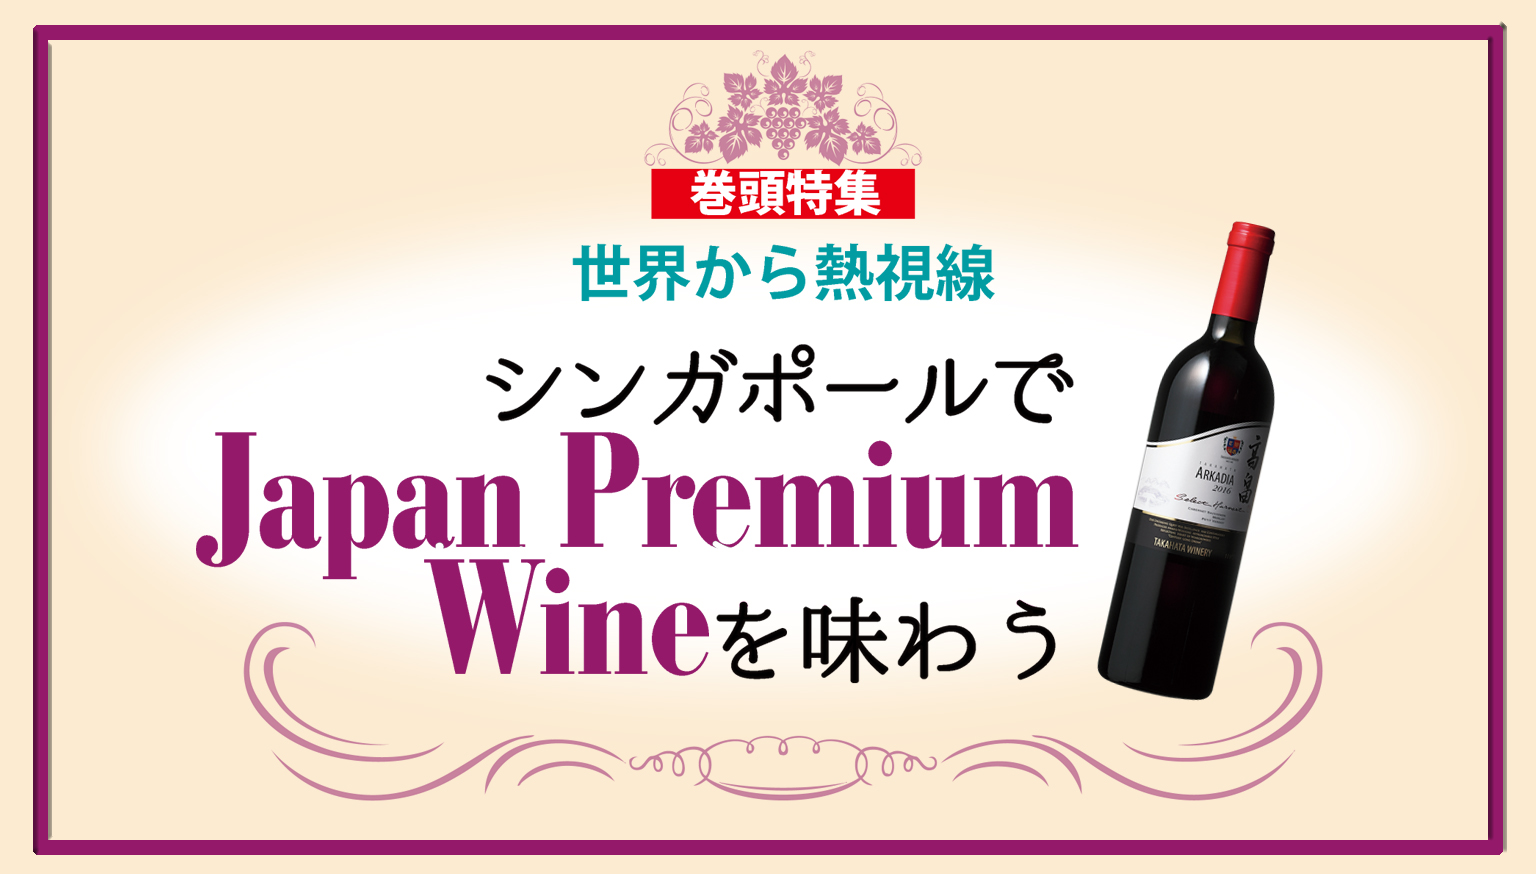 Japan Premium Wine Fair 開催中